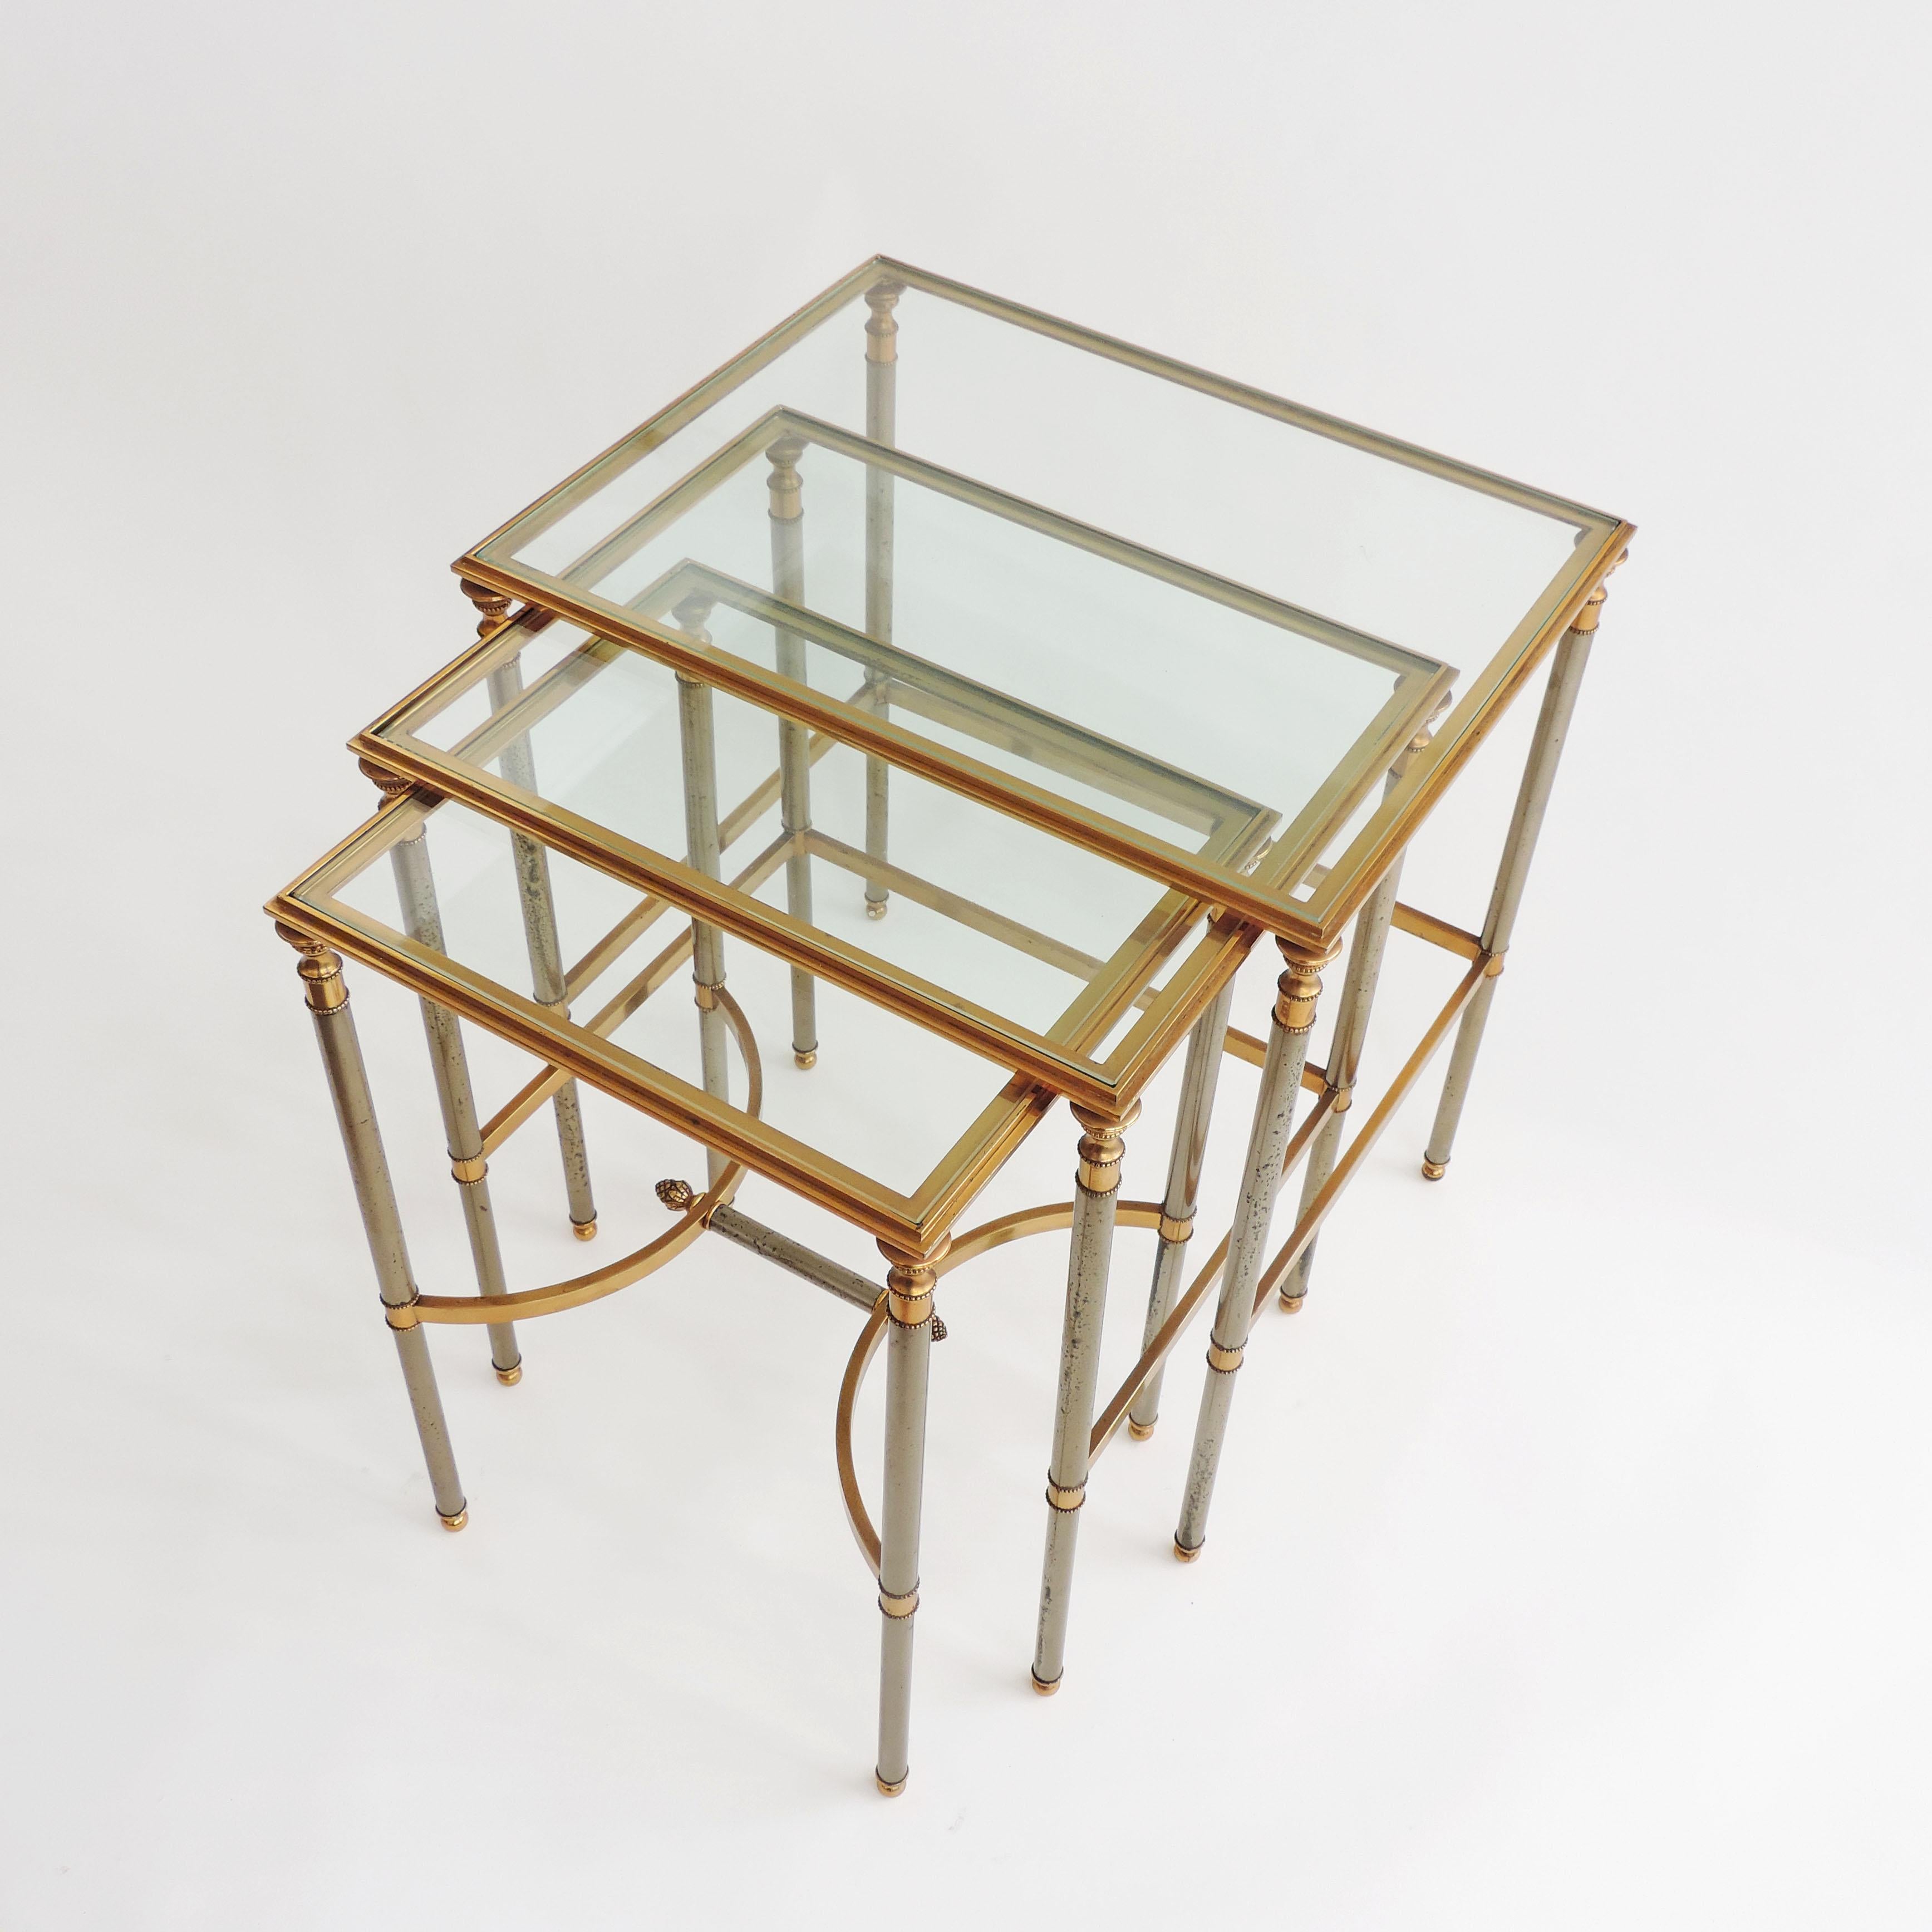 Französische neoklassizistische Tische aus Stahl und Messing aus den 1970er Jahren.
Dem Maison Jansen zugeschrieben.